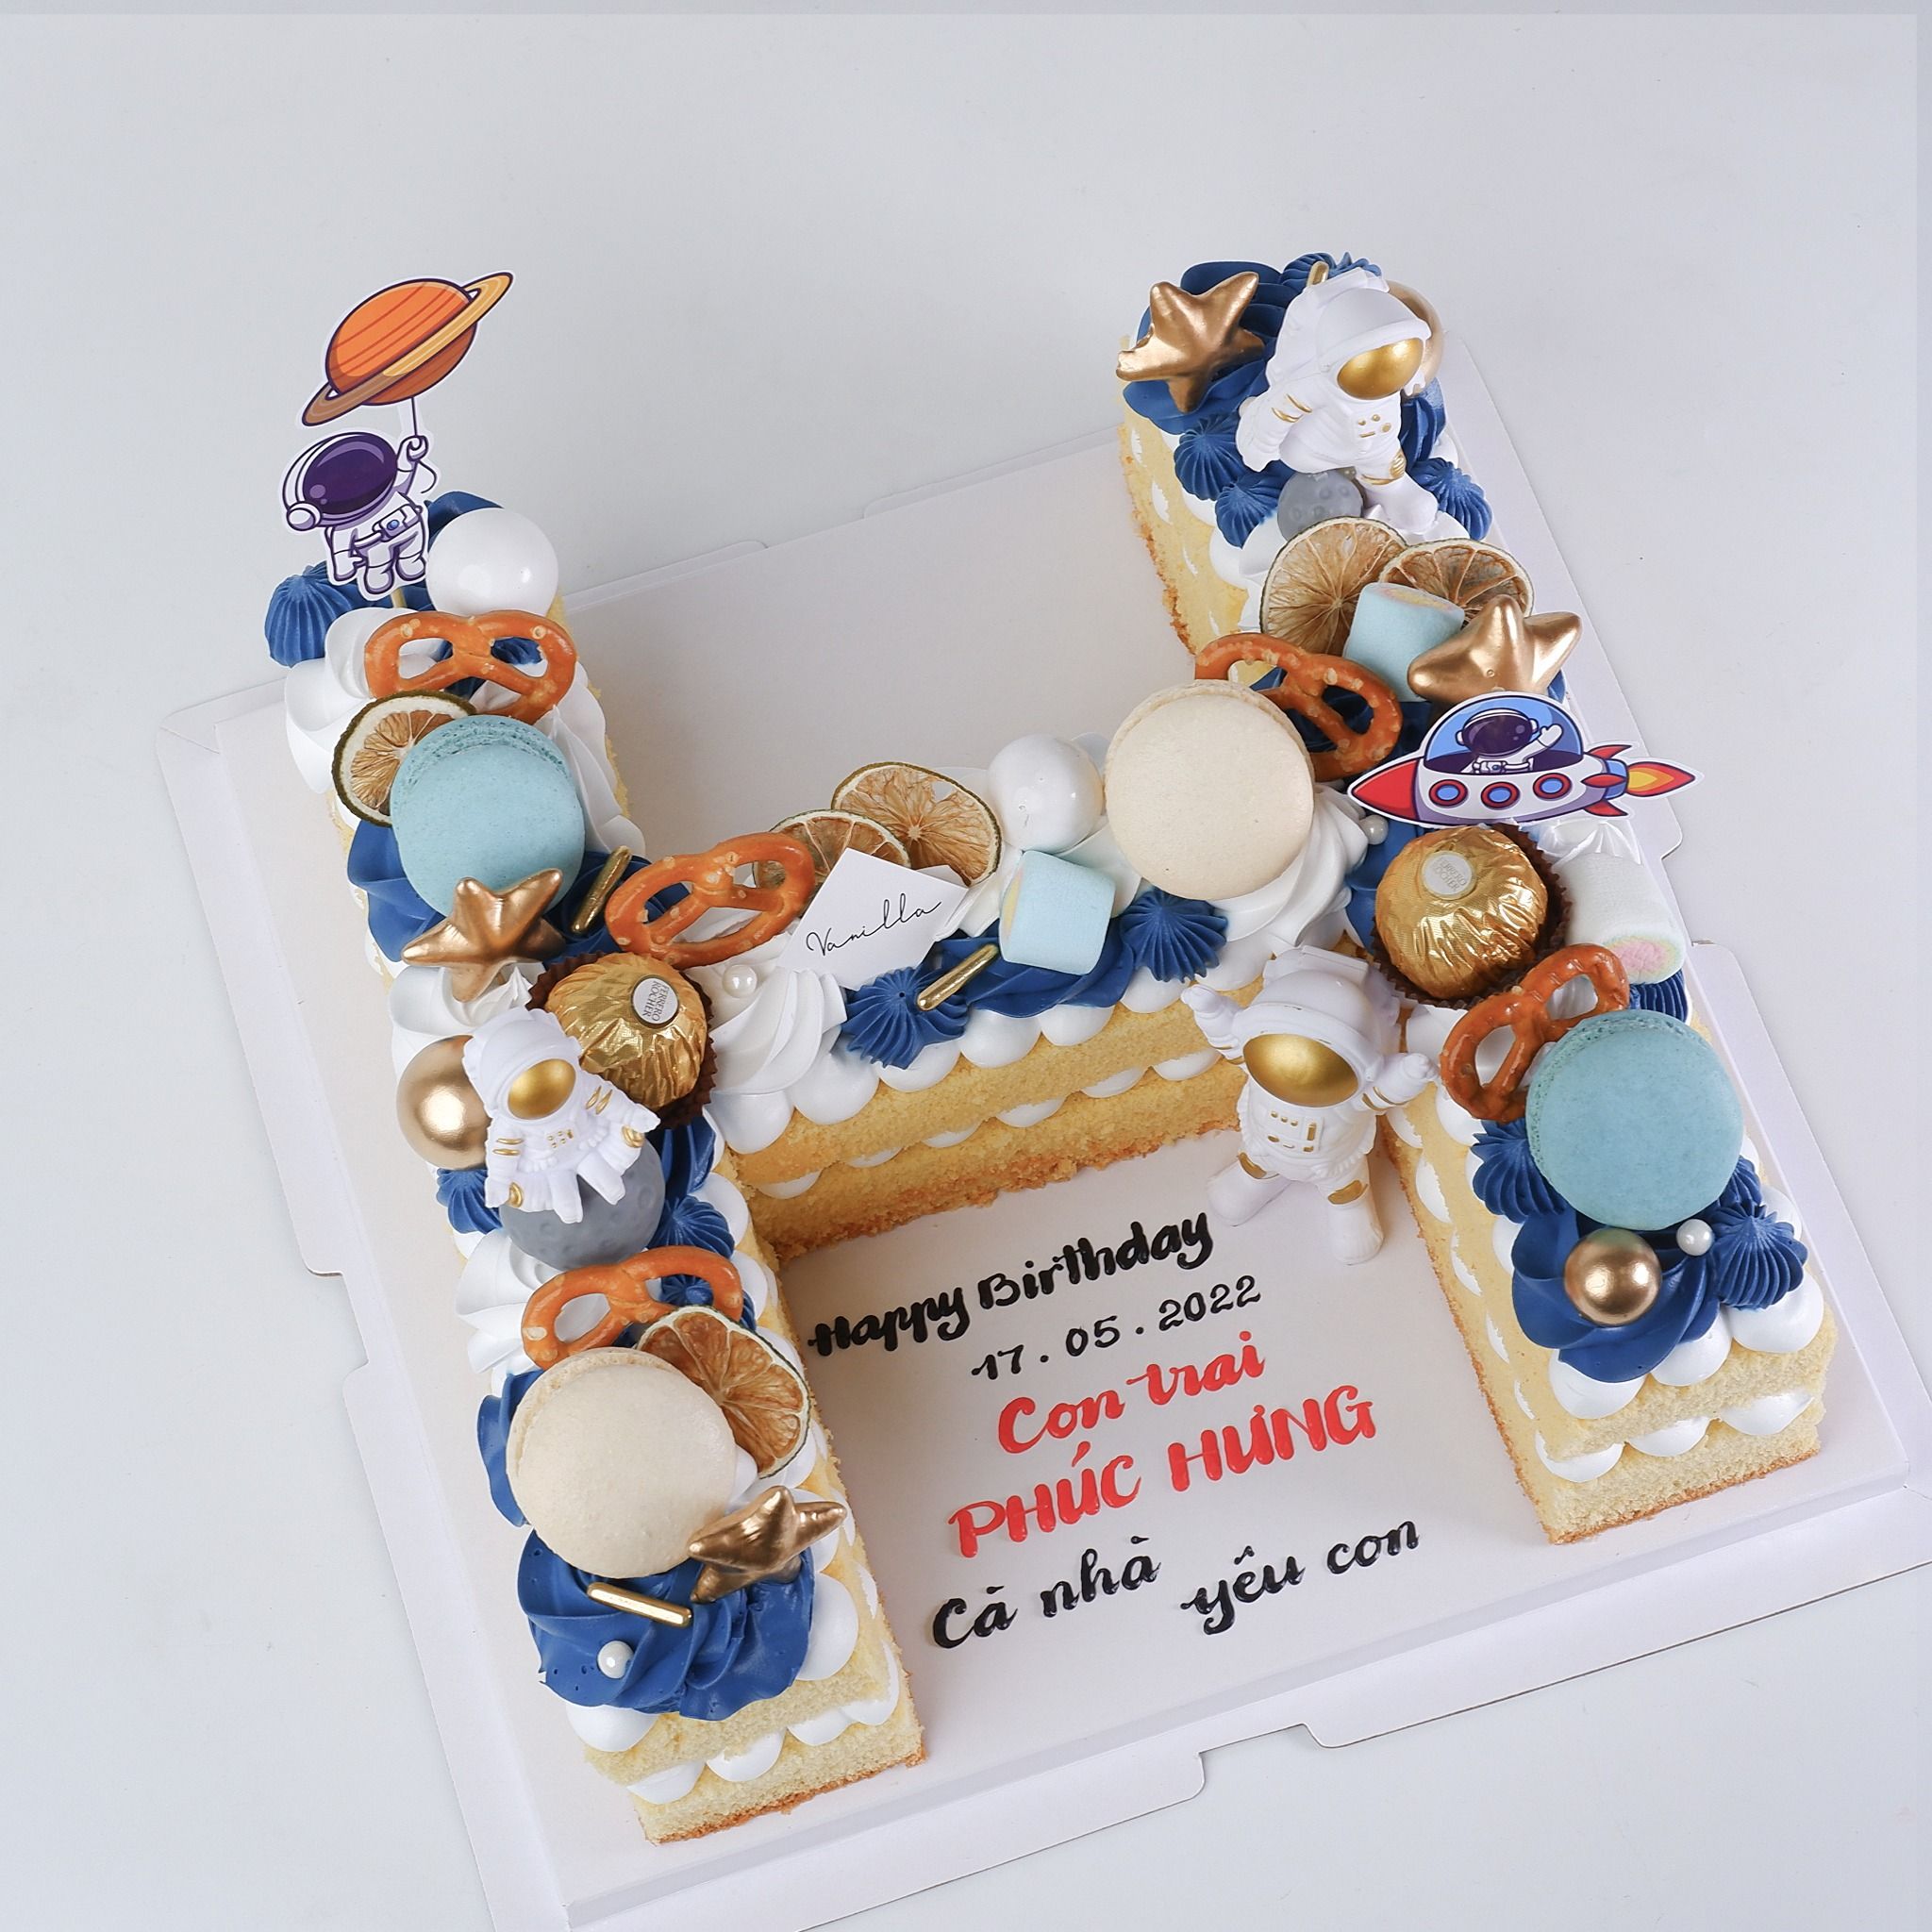  Bánh chữ H trang trí chủ đề phi hành gia - Bánh kem sinh nhật Đà Nẵng 